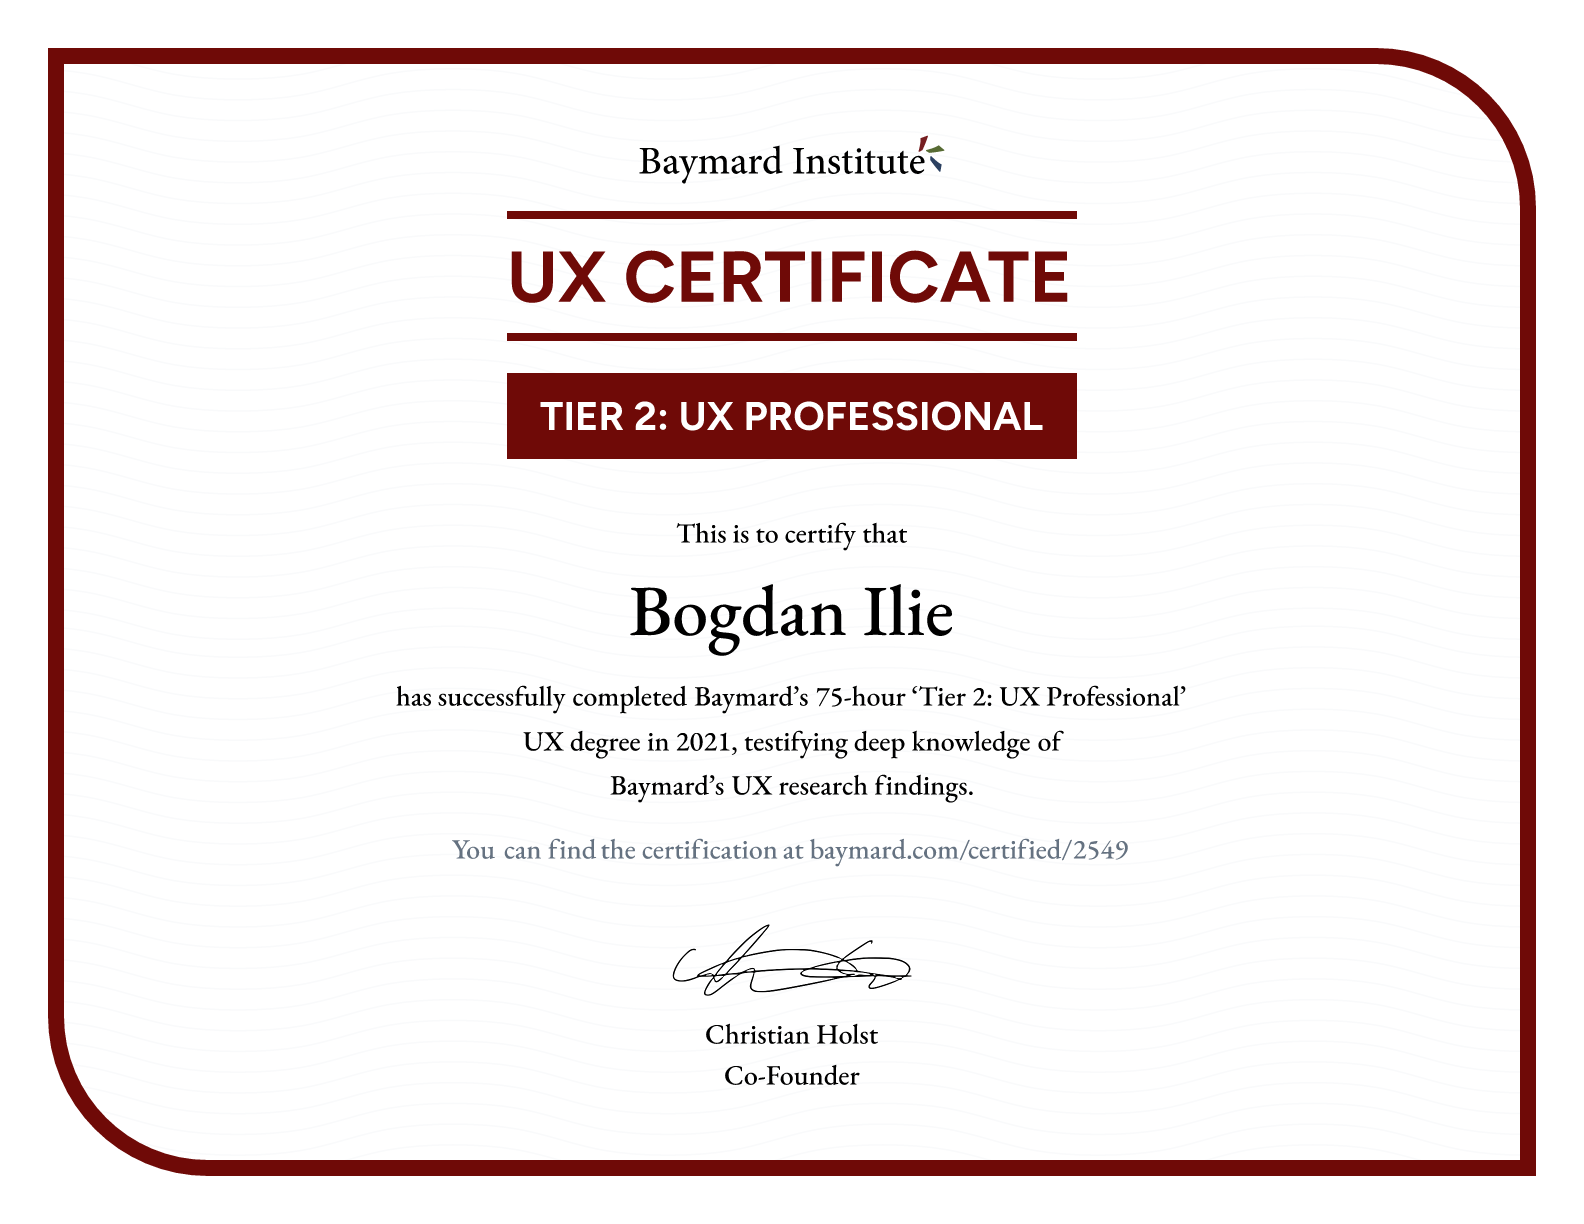 Bogdan Ilie’s certificate